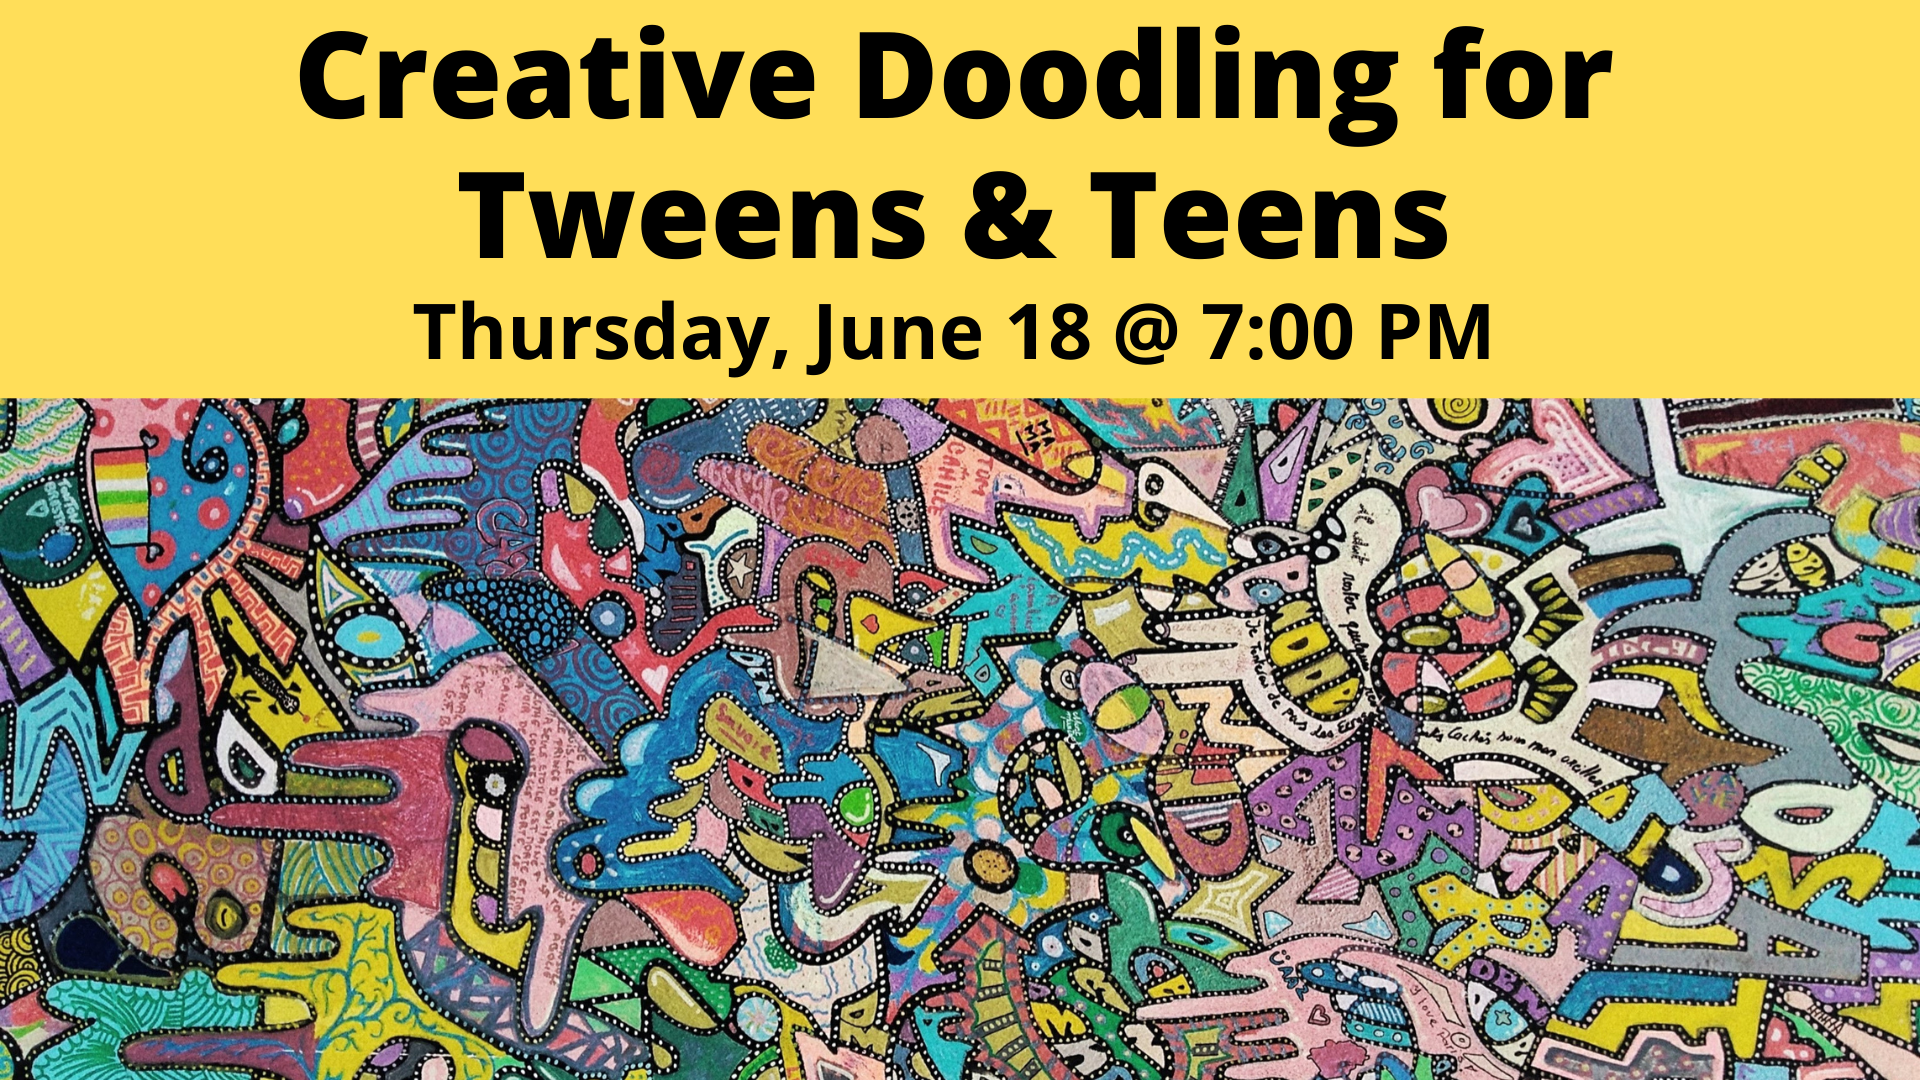 Creative Doodling for Tweens & Teens 